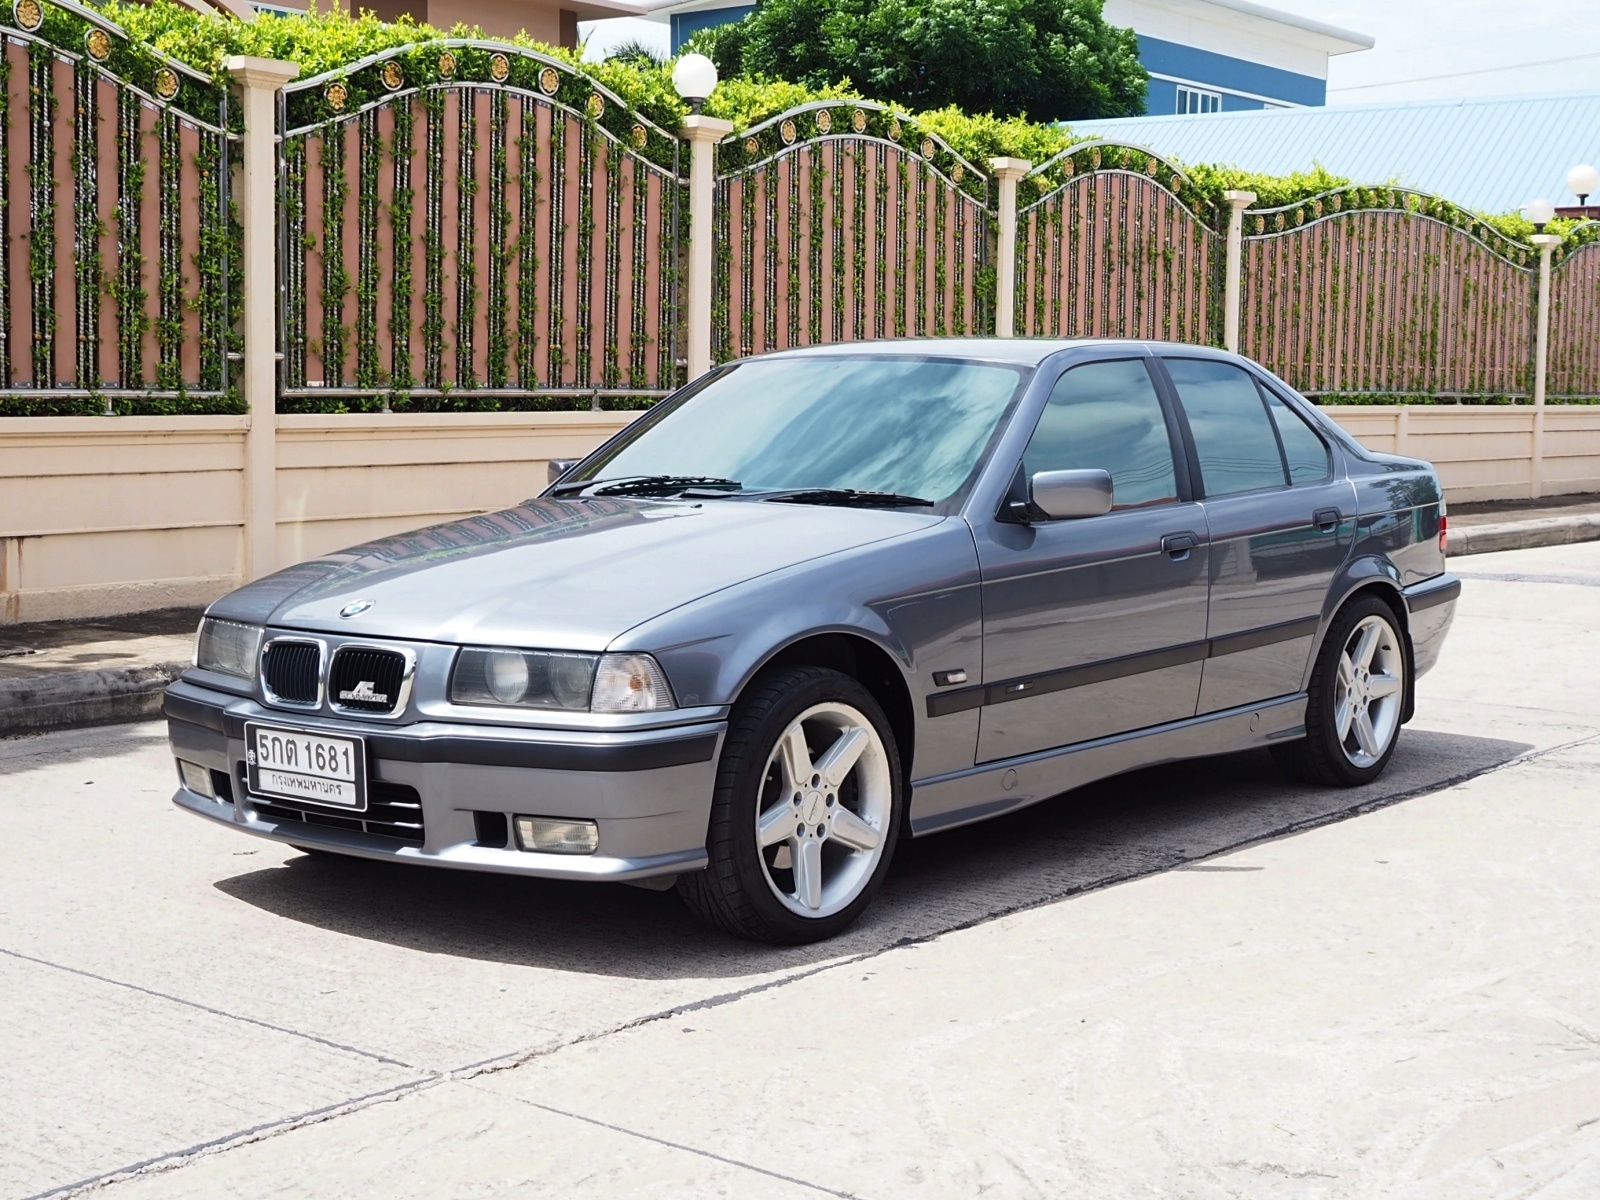 BMW E36 318I M43 ปี 2000 เกียร์AUTO ปี 2000 ปีสุดท้าย ของE36 ทรงคุณค่าแก่การครอบครองสะสม รูปที่ 1